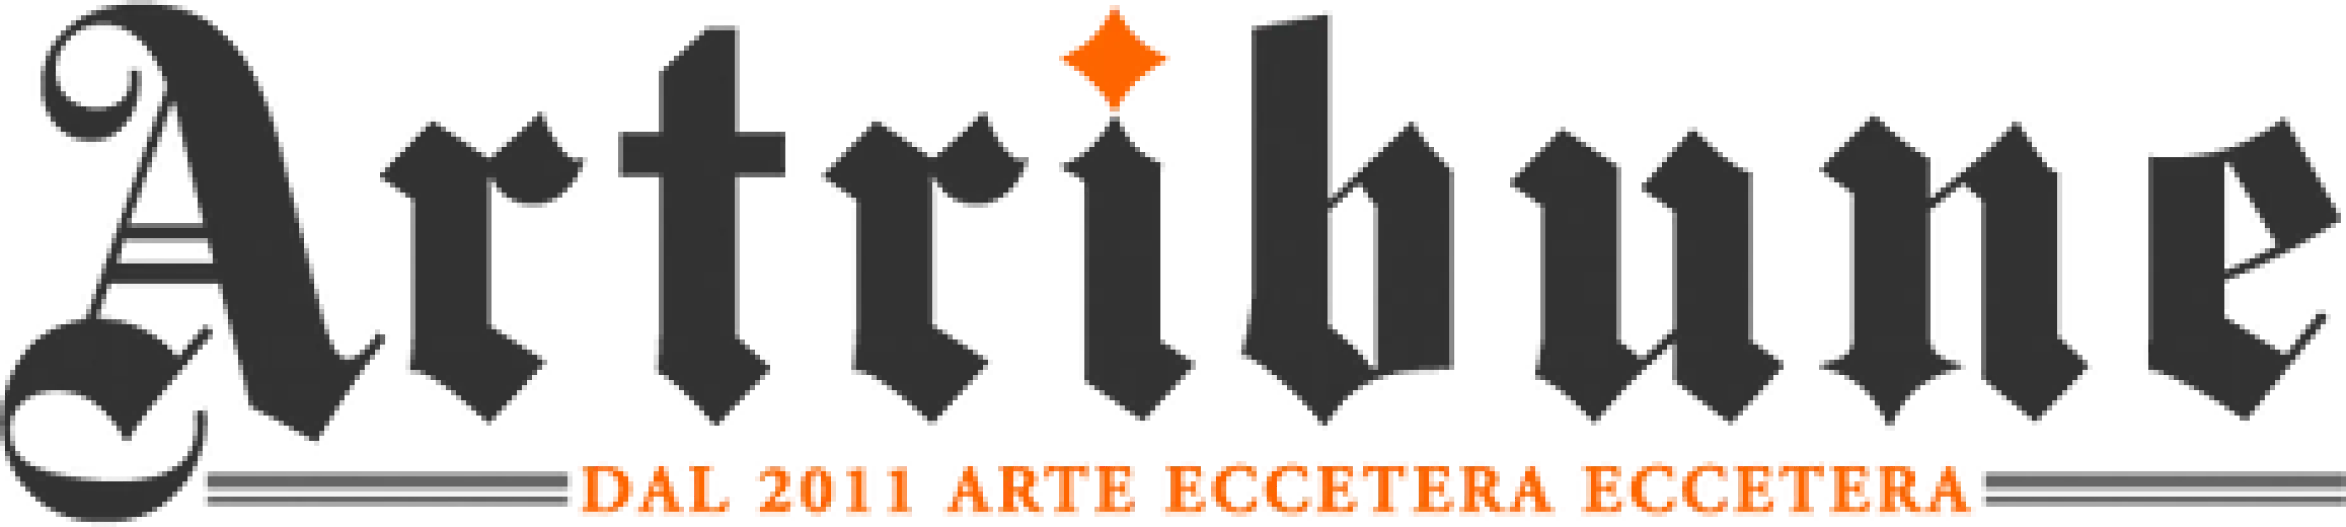 Artribune logo